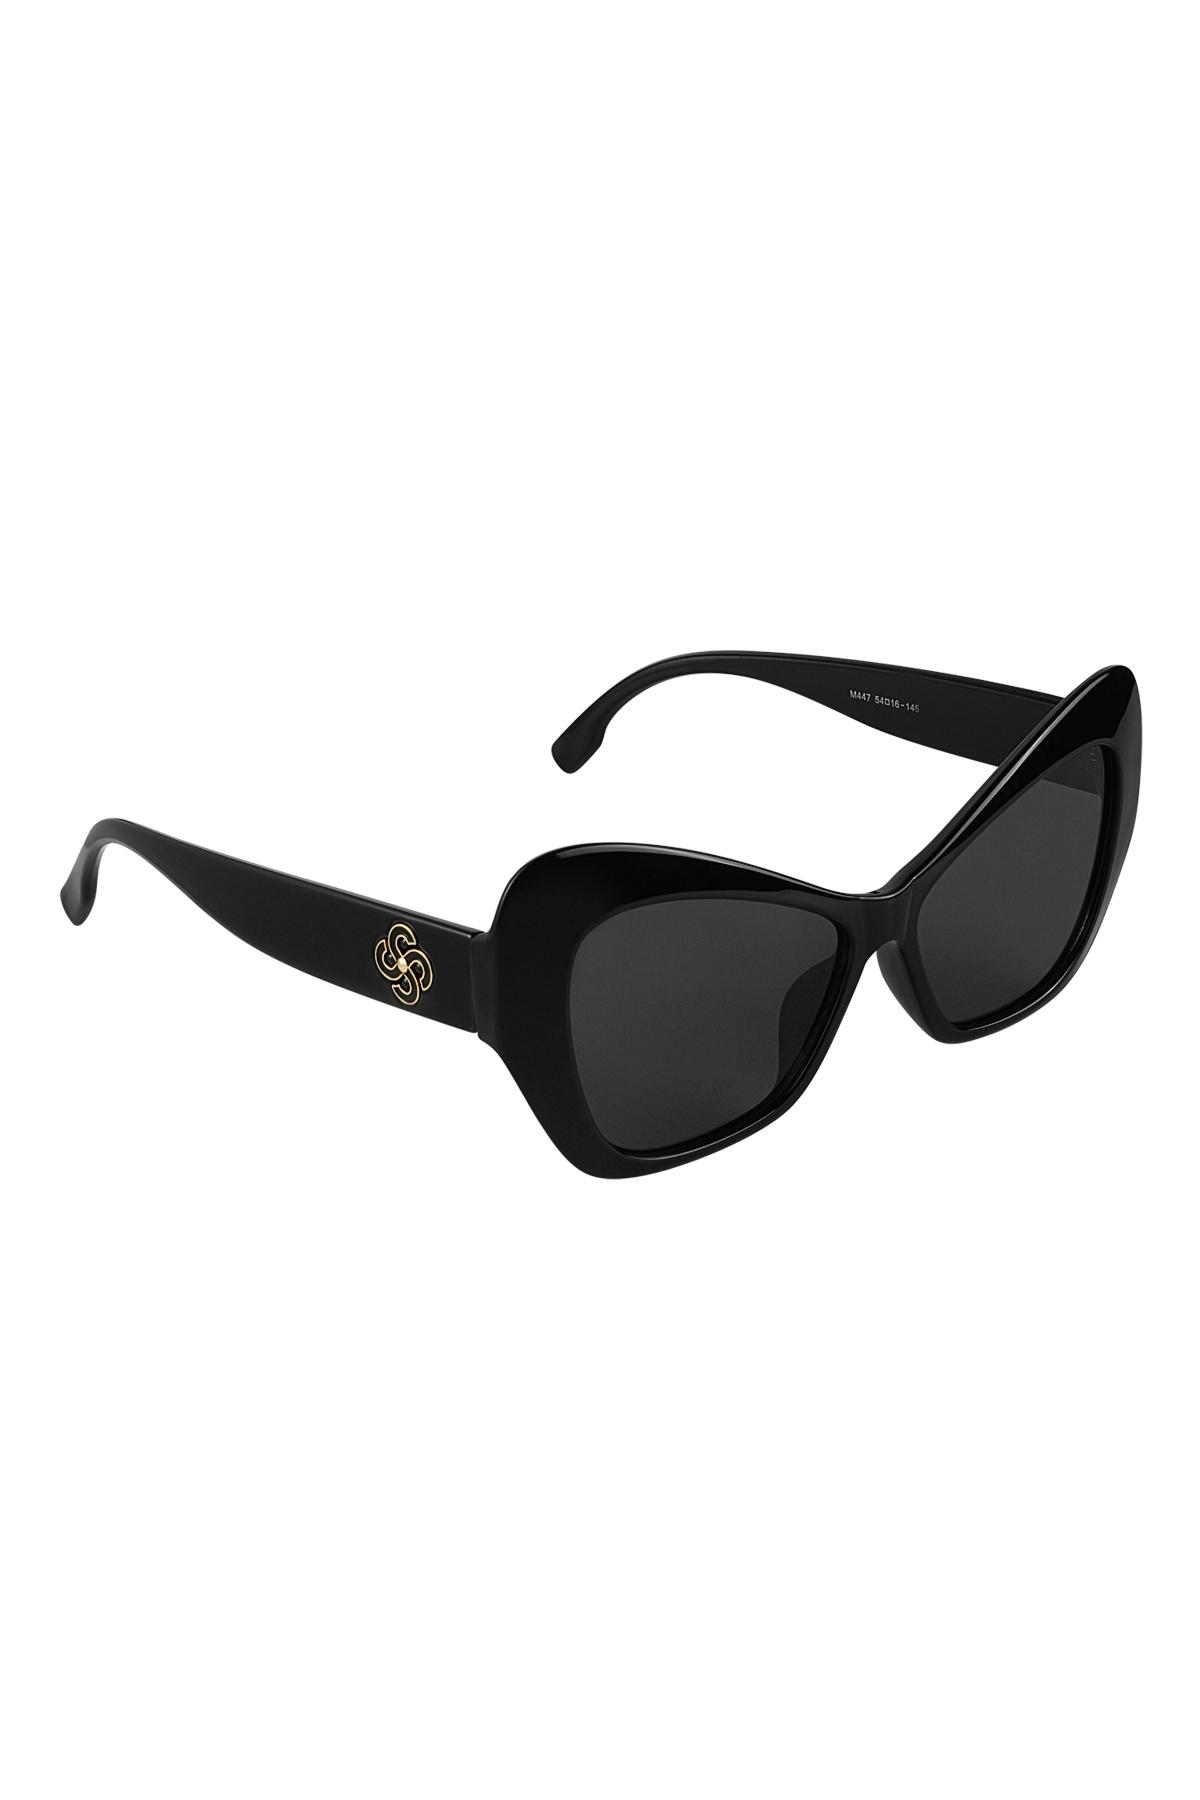 Dichiarazione sugli occhiali da sole Black PC One size 